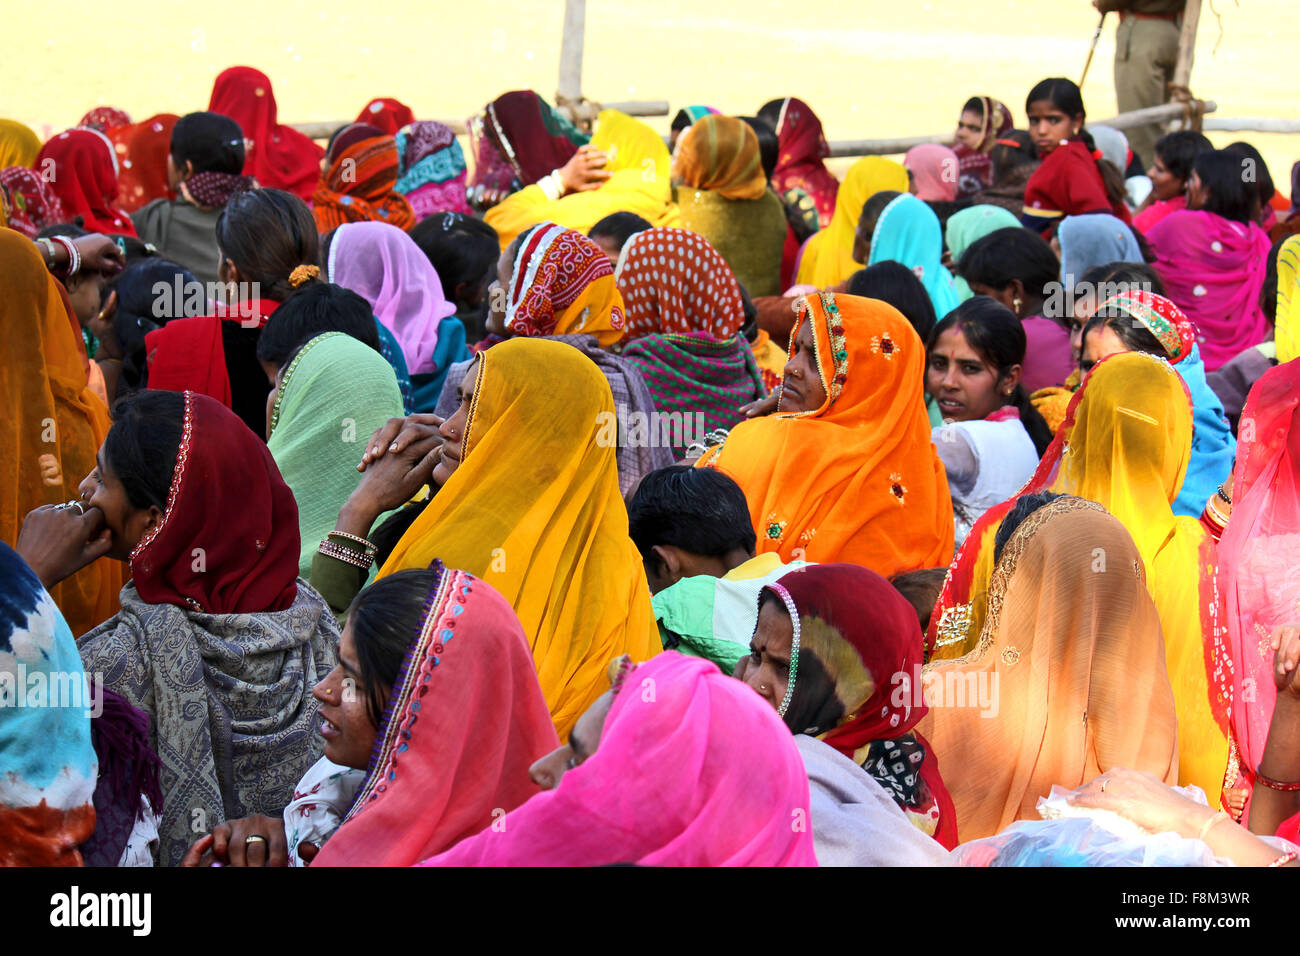 Pushkar, Indien, 28. November 2012: Menschenmenge in Pushkar fair, im indischen Rajasthan Zustand, wartet eine Ausstellung. Ma Stockfoto